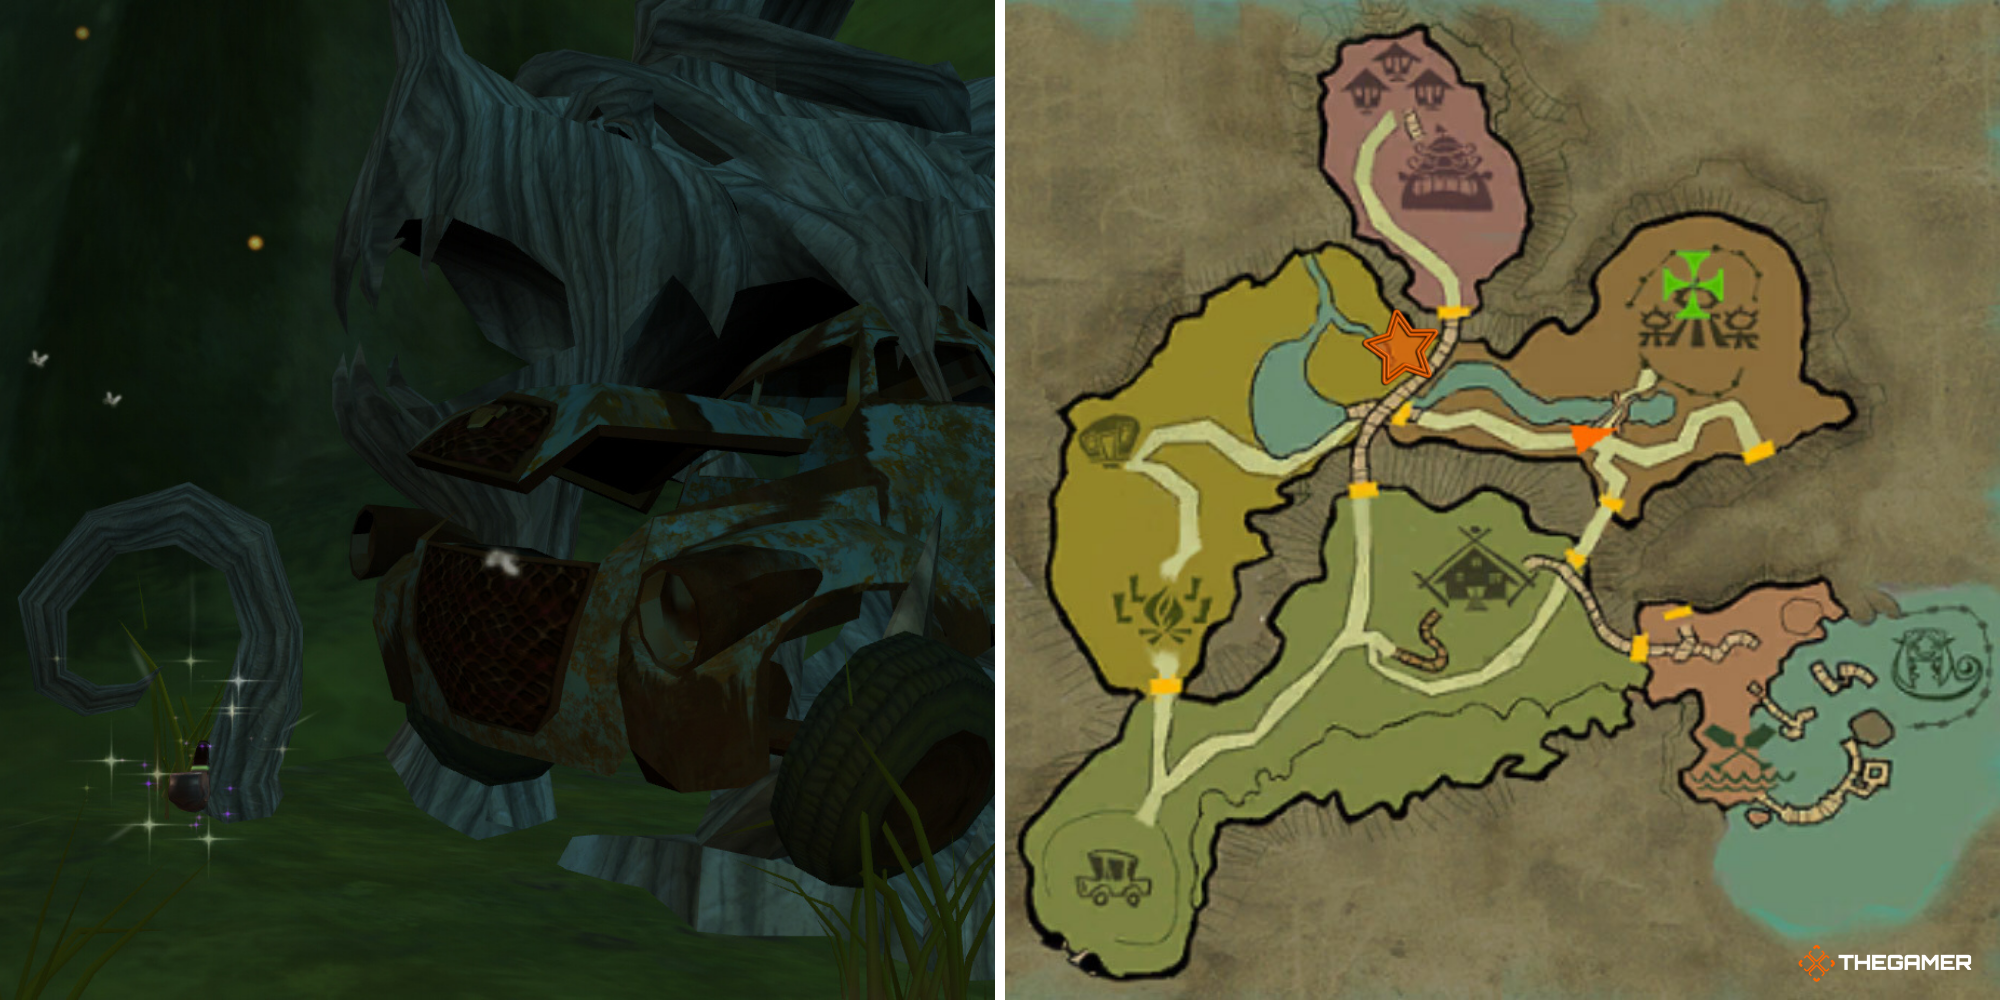 Posizione della pipa in legno di ciliegio degli Psychonauts nel gioco a sinistra, sulla mappa a destra (1)